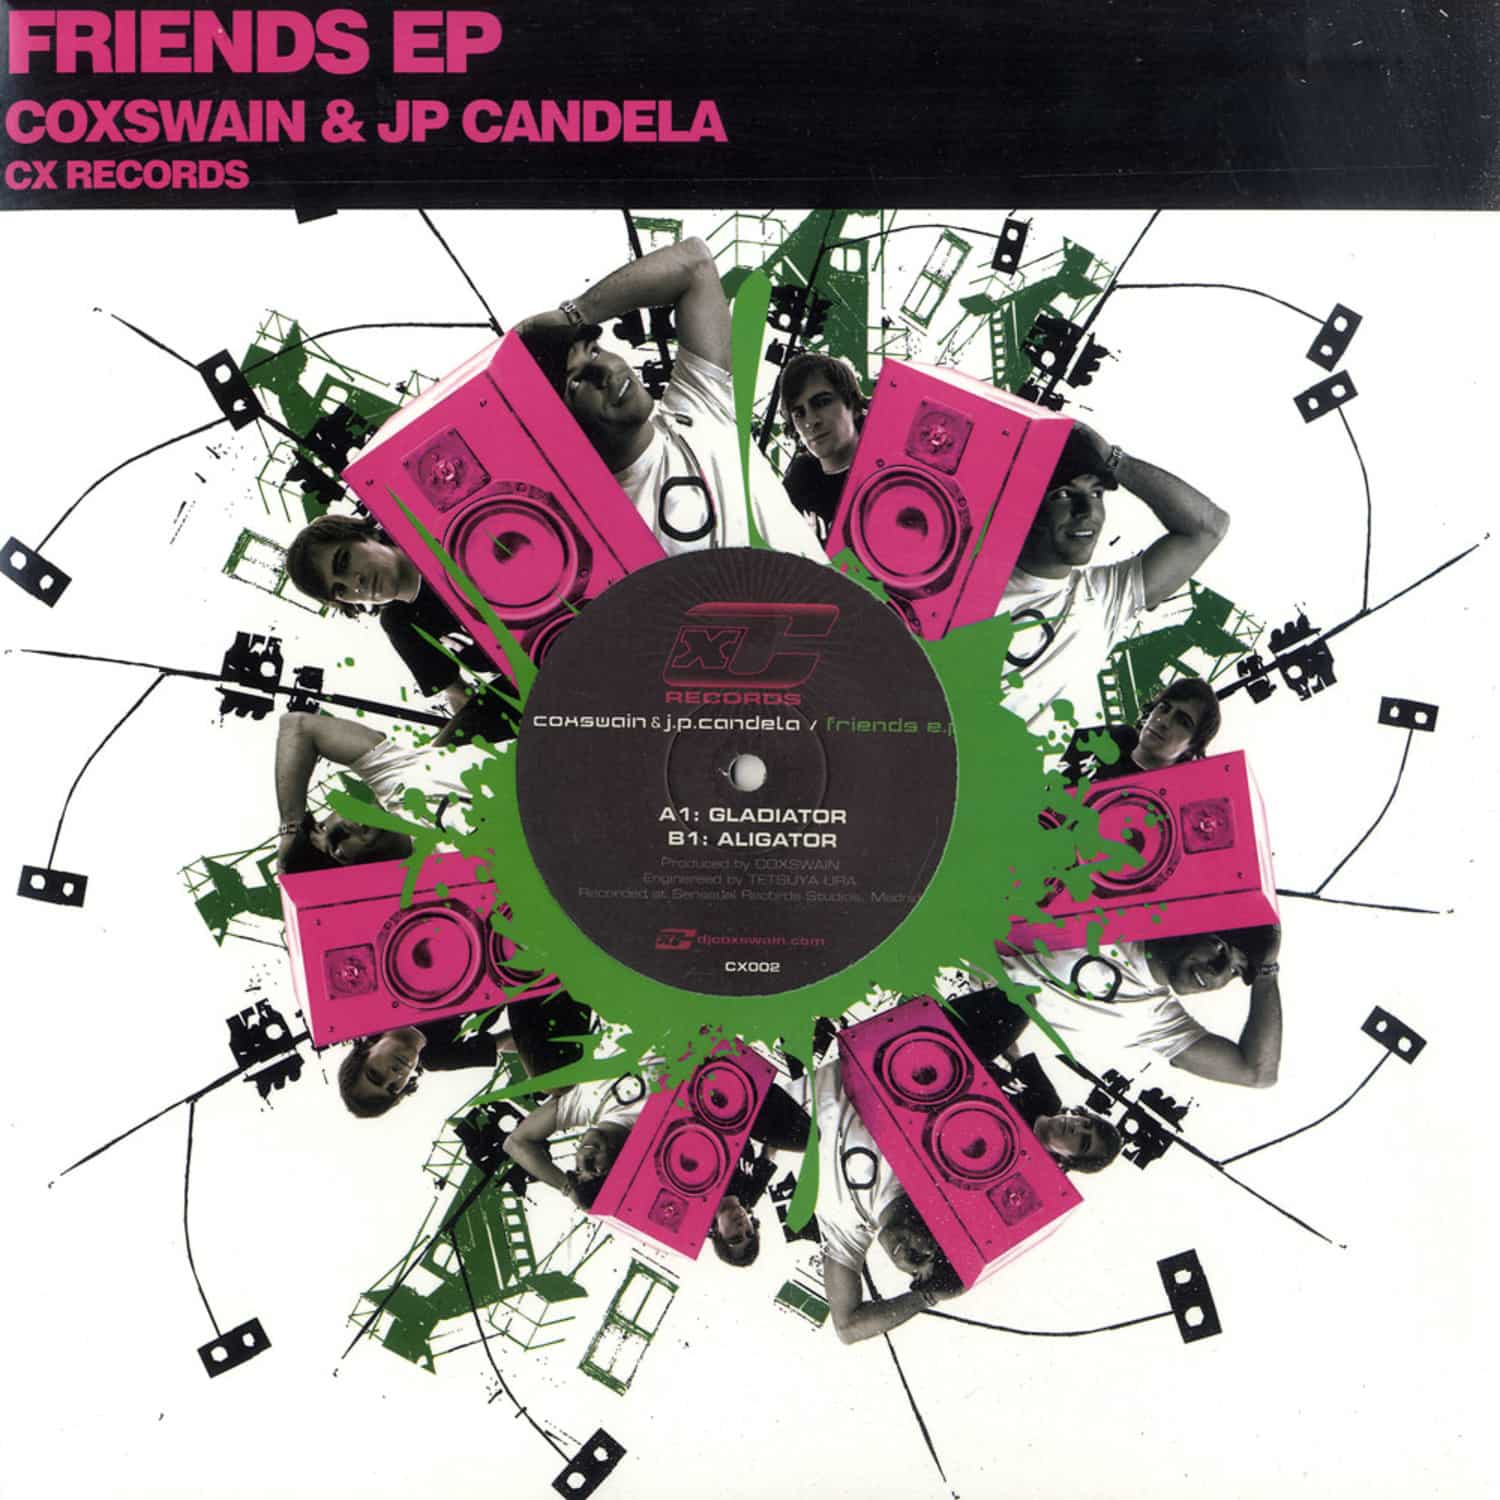 Coxswain & JP Candela - FRIENDS E.P.